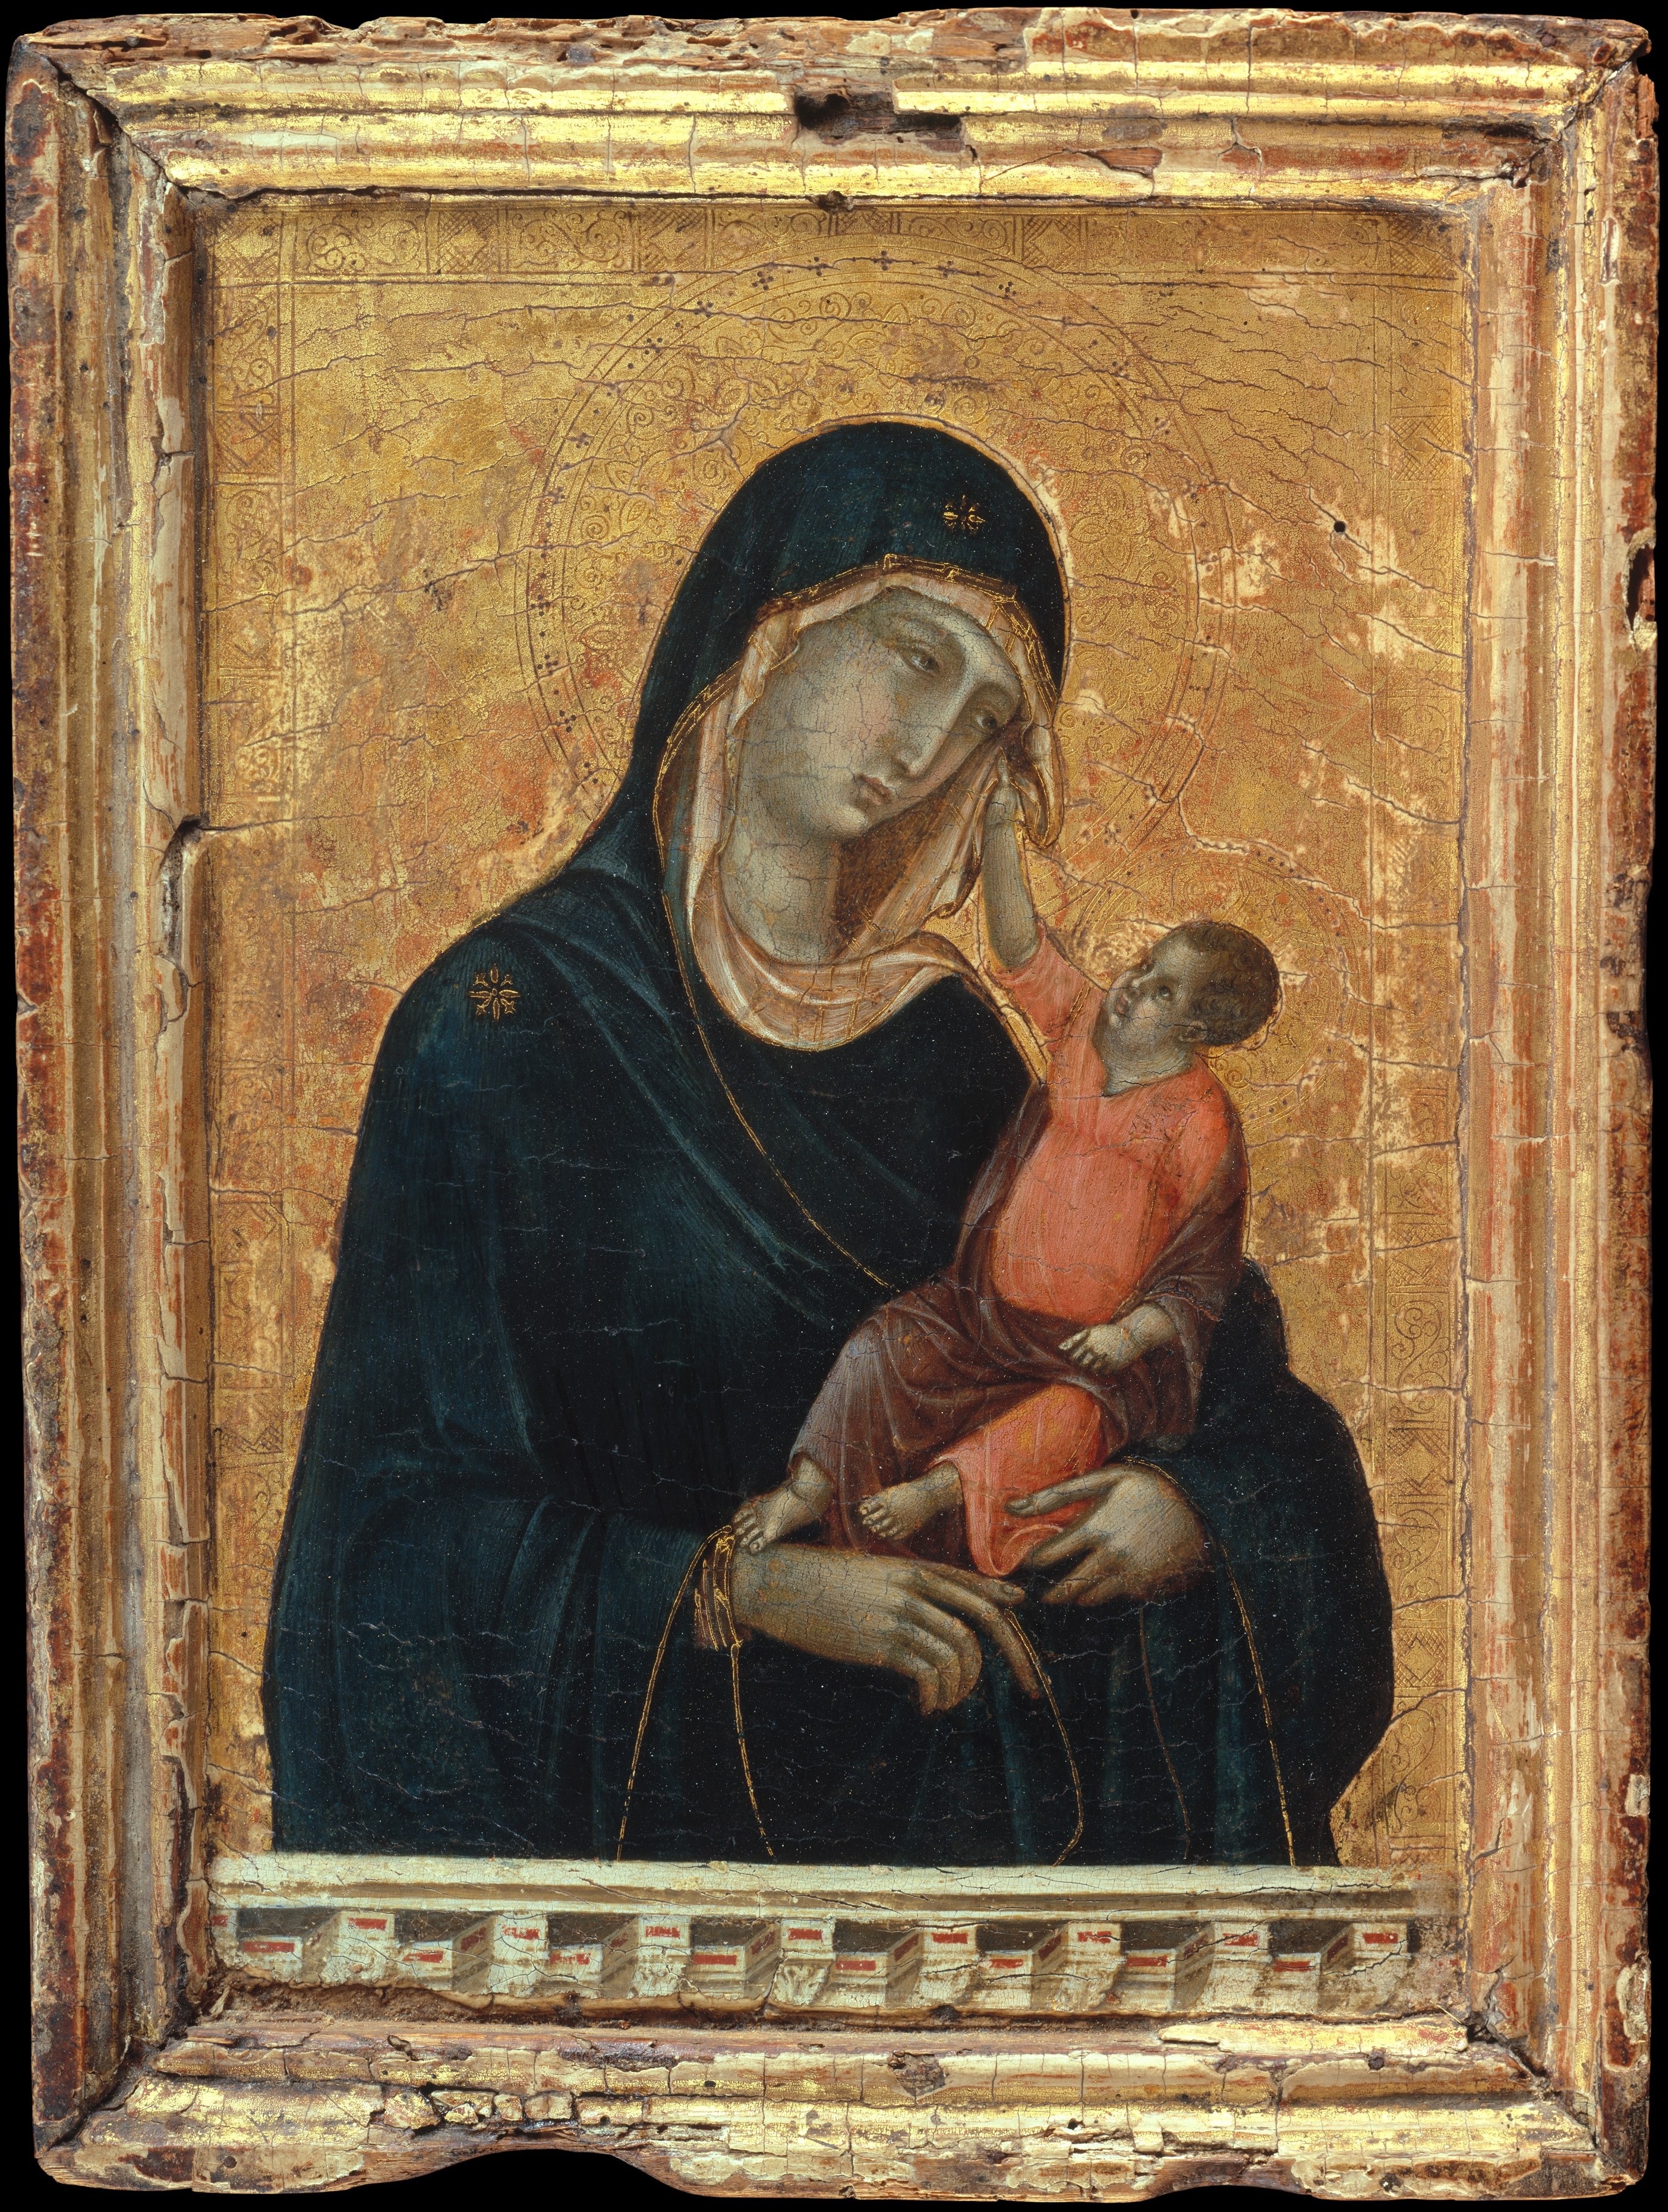 Fecioara cu pruncul by Duccio di Buoninsegna - ca. 1290–1300 - 11 x 8 1/4 in 